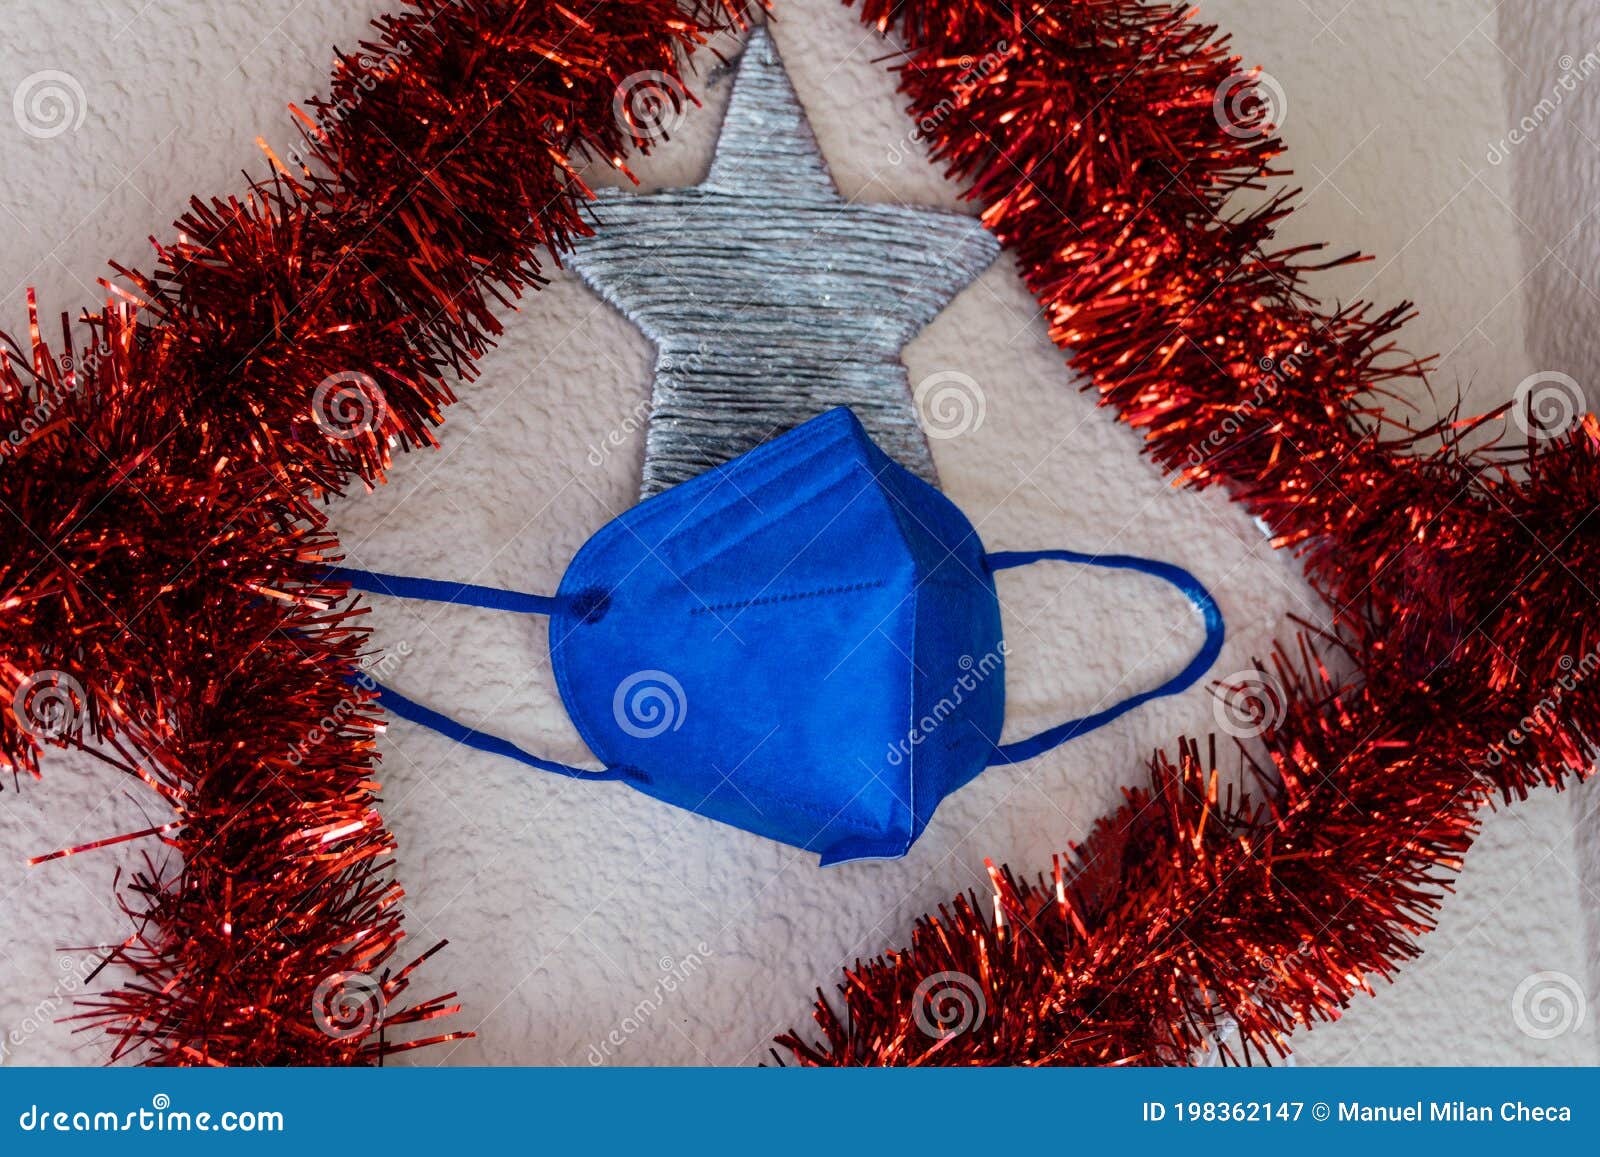 navidad en la nueva realidad (covid 19). decoraciÃÂ³n con bola roja con mascarilla mÃÂ©dica. concepto de navidad seguro